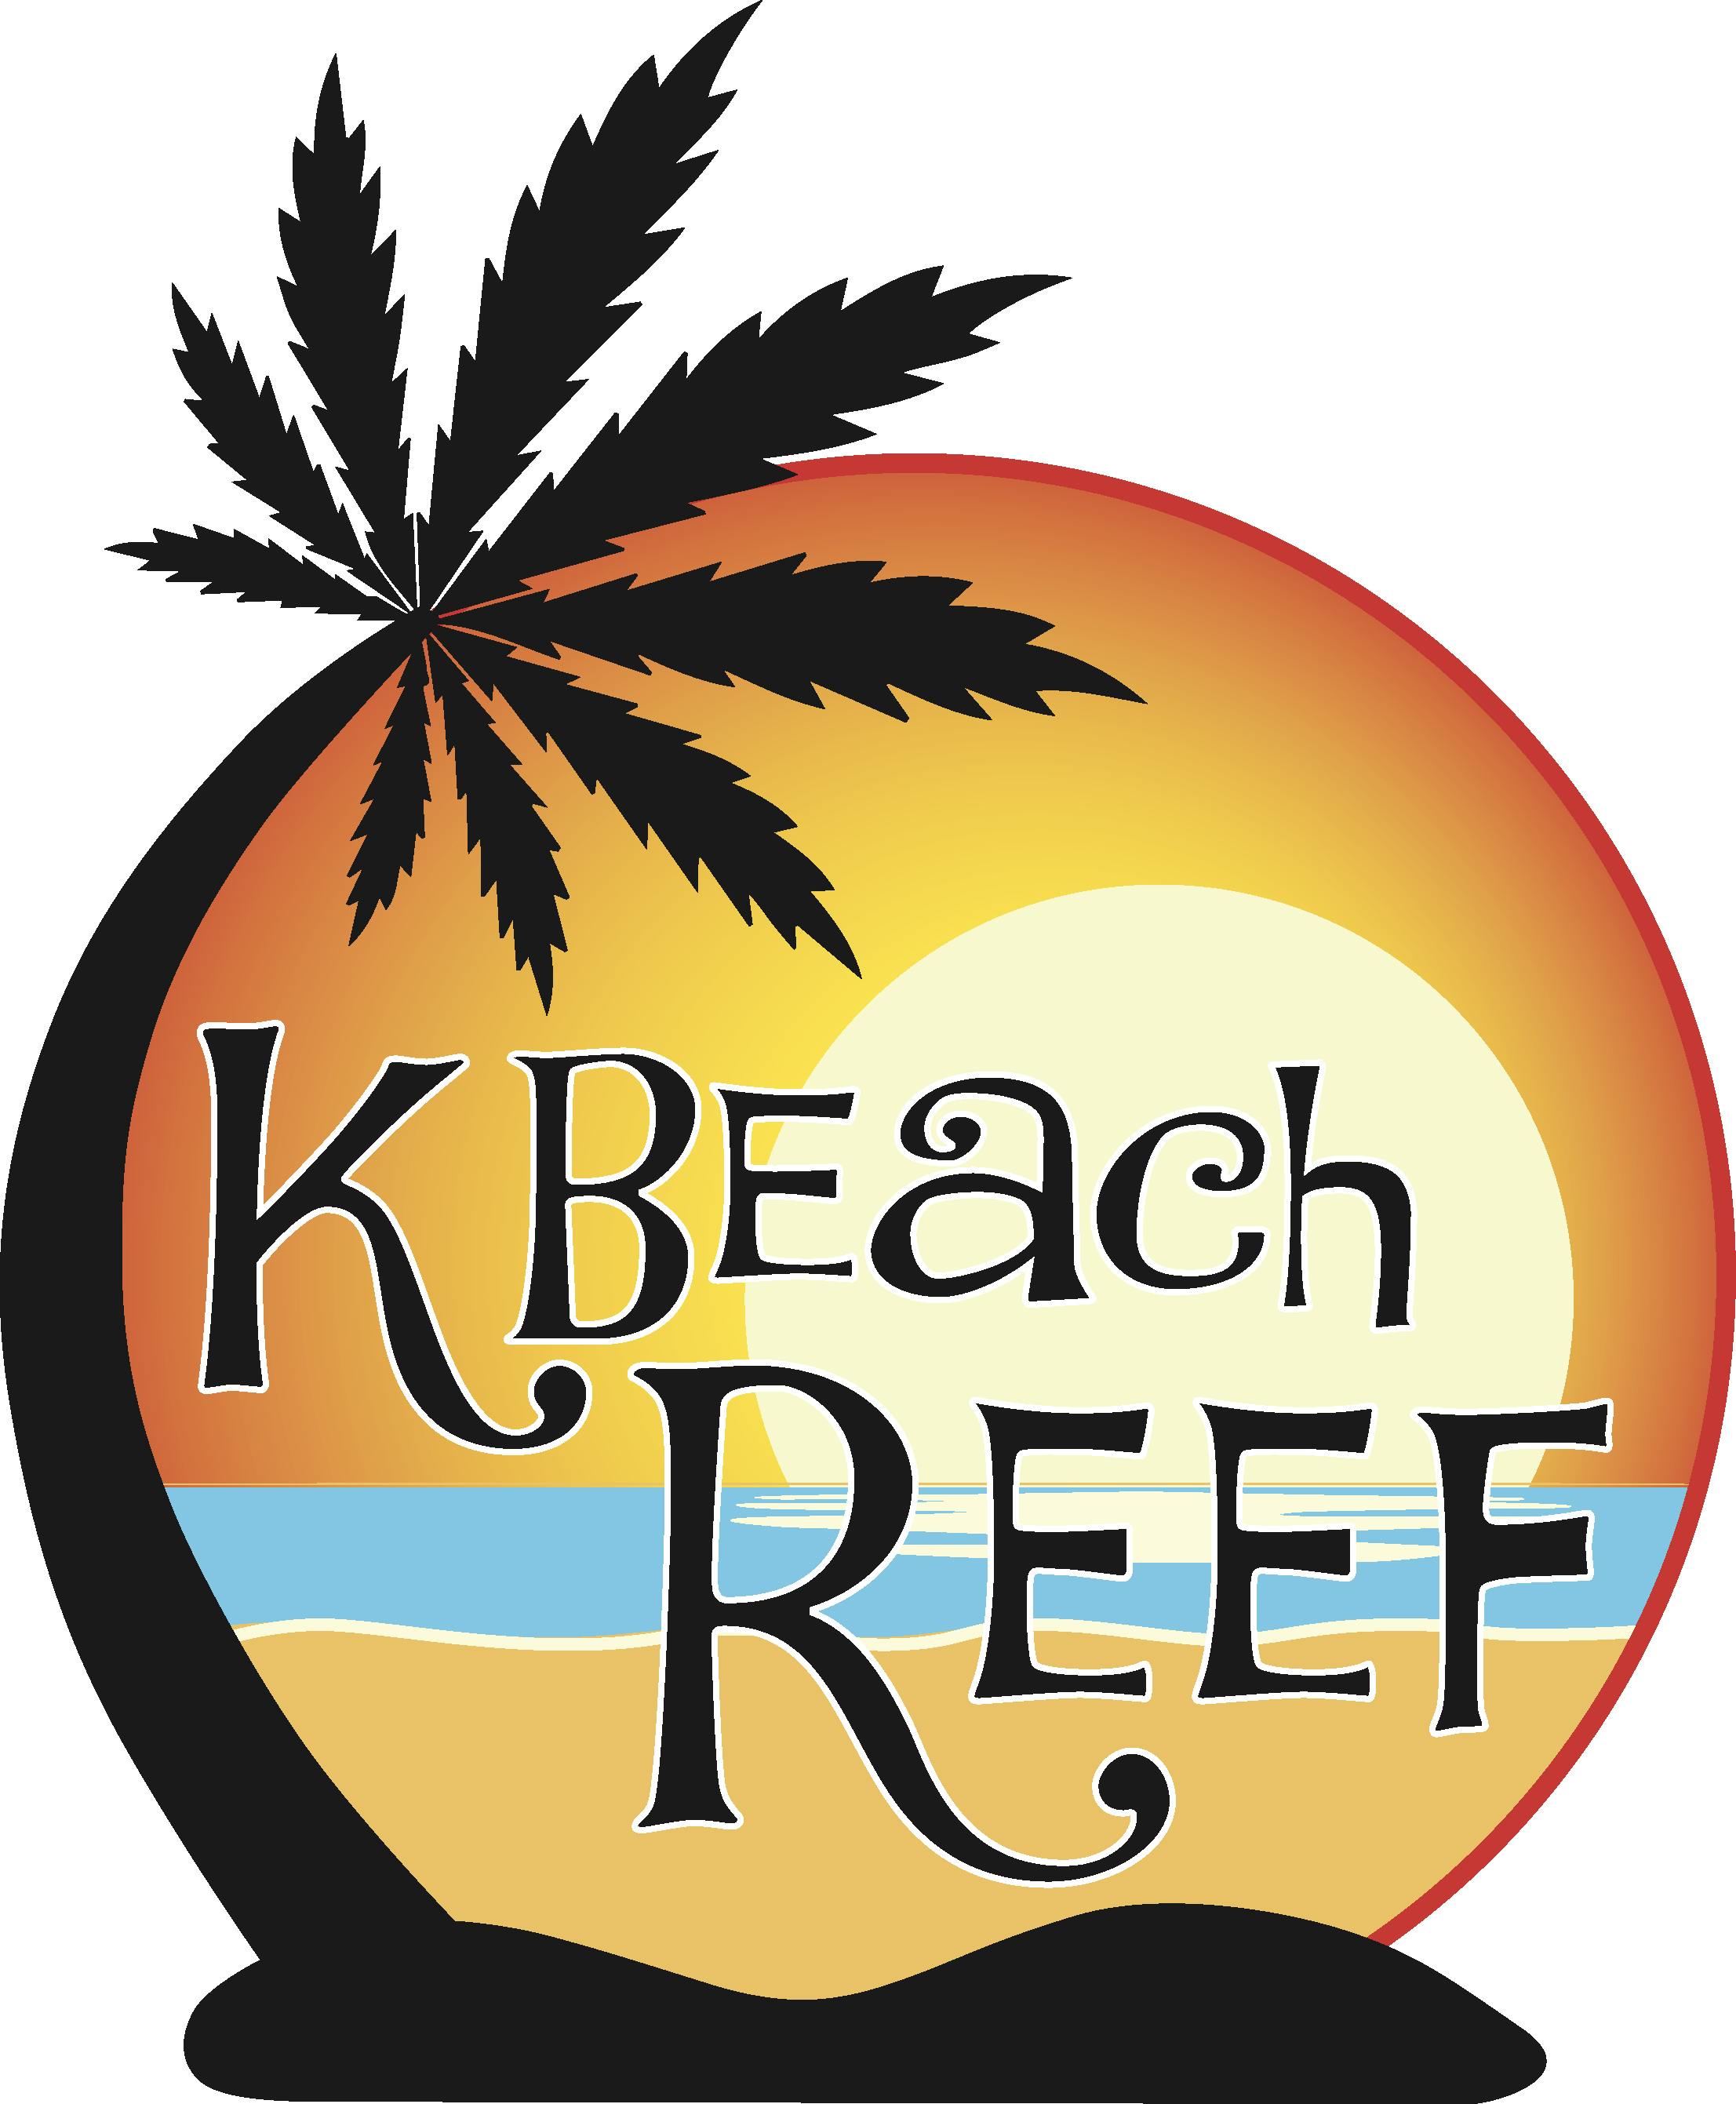 K BEACH REEF (Red Run Cannabis Company) logo